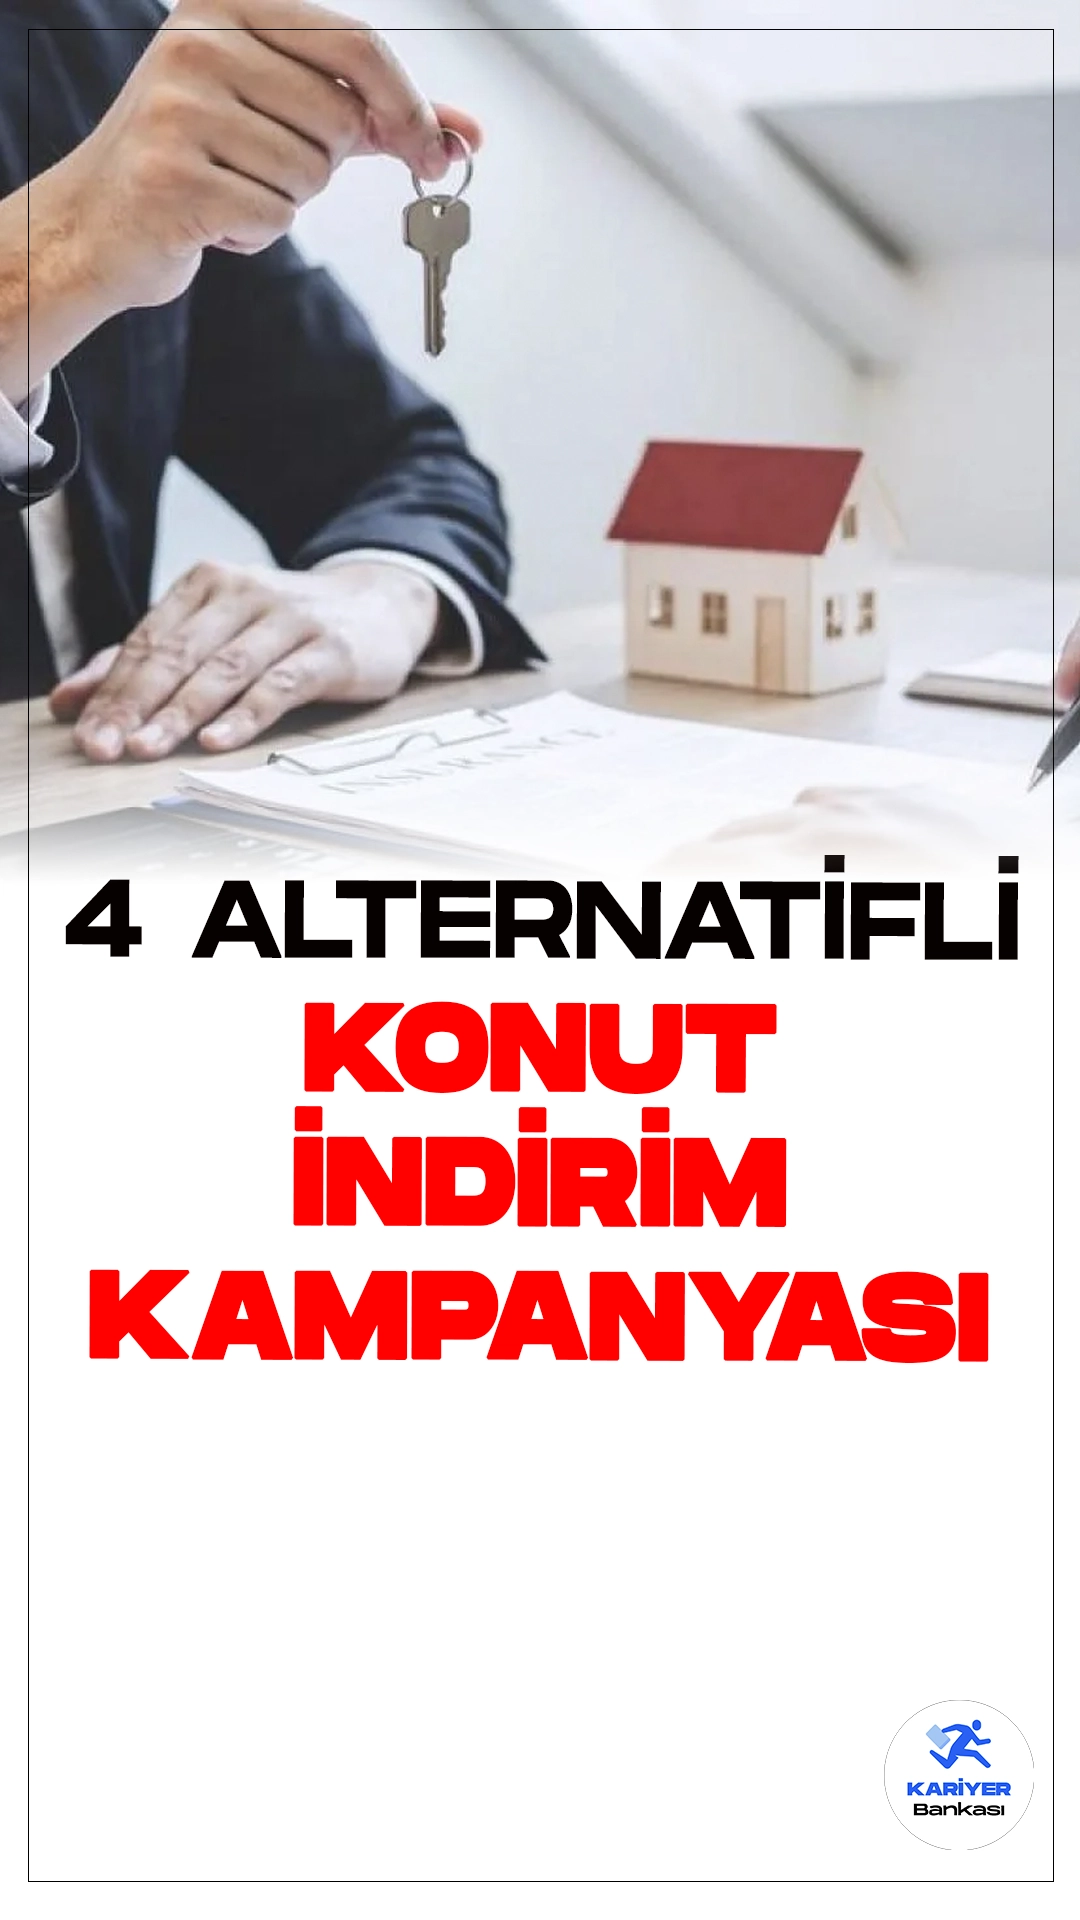 Emlak Konut'tan 4 Alternatifli Konut İndirim Kampanyası Başladı.Emlak Konut GYO çoğunluğu İstanbul'da olmak üzere 16 projede 4 alternatifli konut indirim kampanyası başlattı.